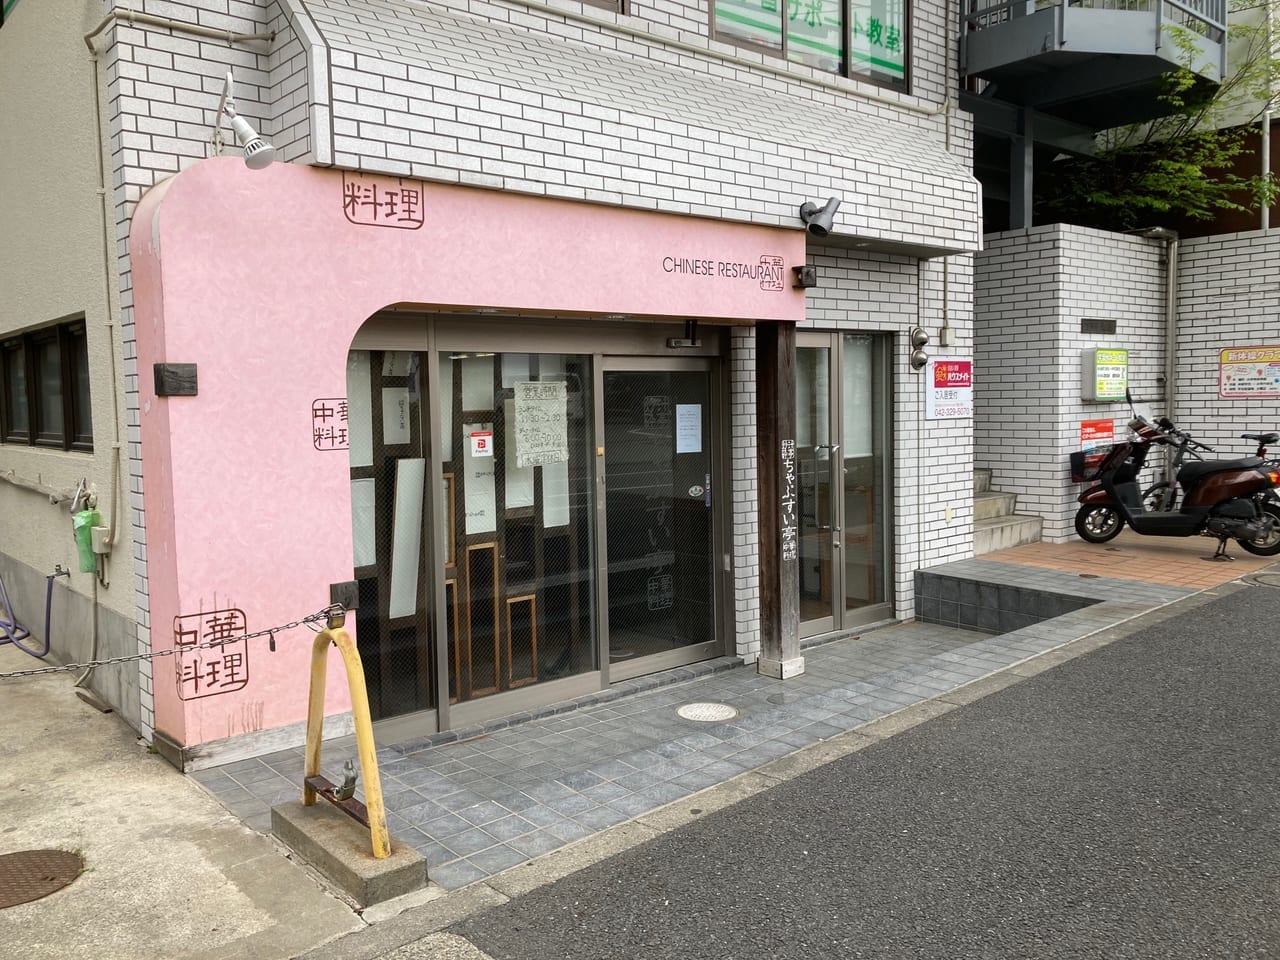 国分寺駅南口、中華料理店『ちゃぷすい亭』が長期の休業後、3月末で閉店していました。